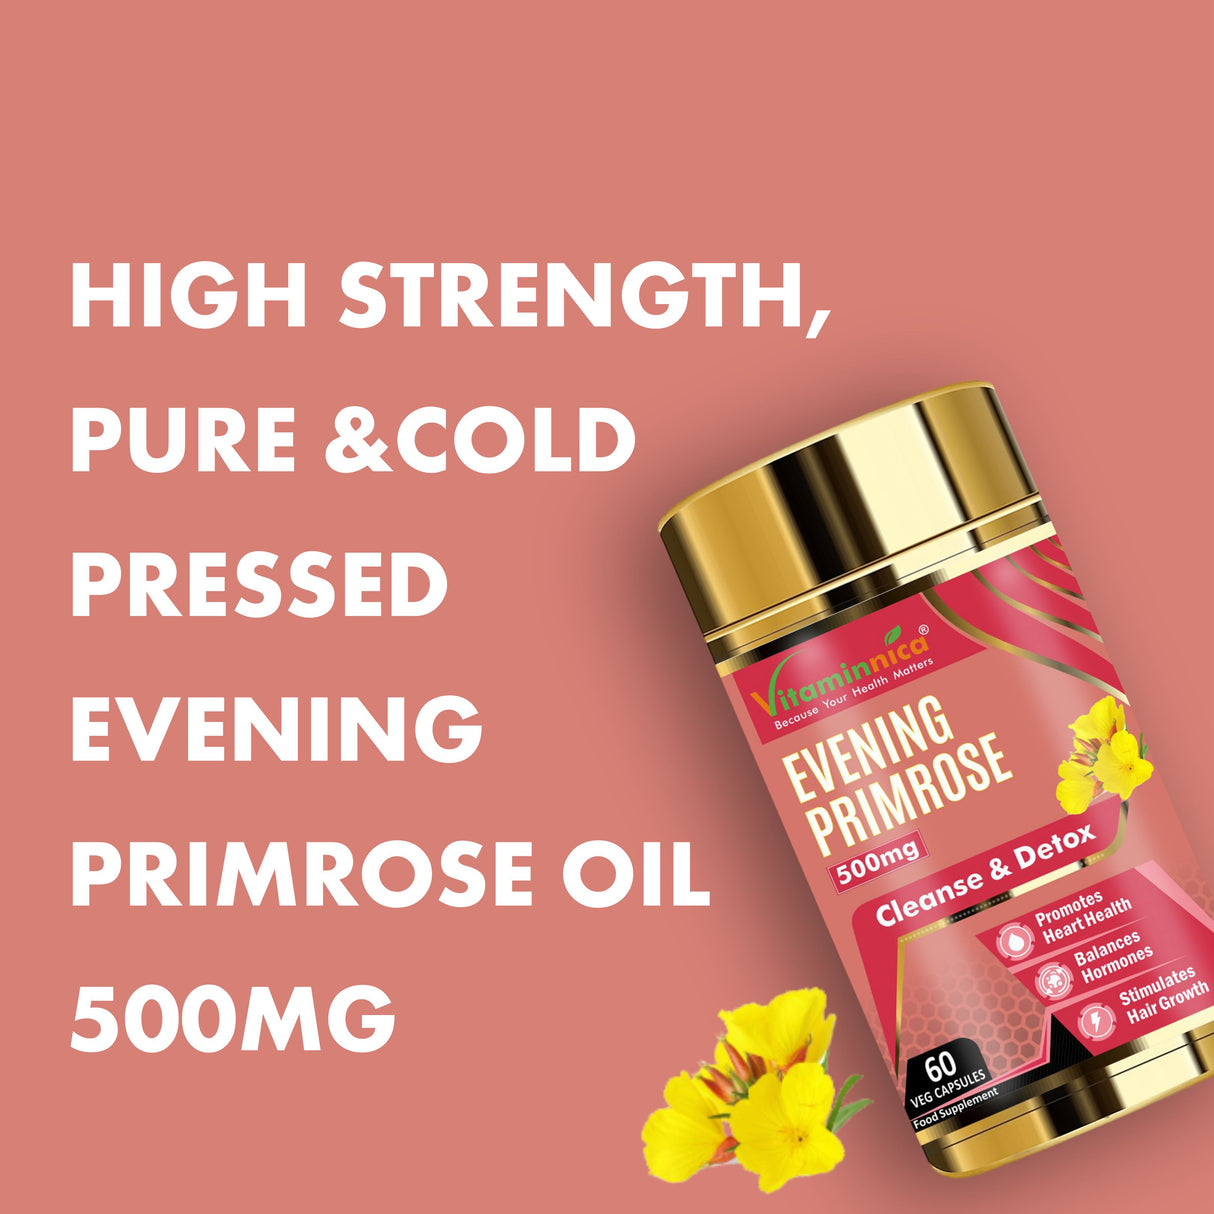 Vitaminnica Evening Primrose Oil 500mg - 60 Capsules